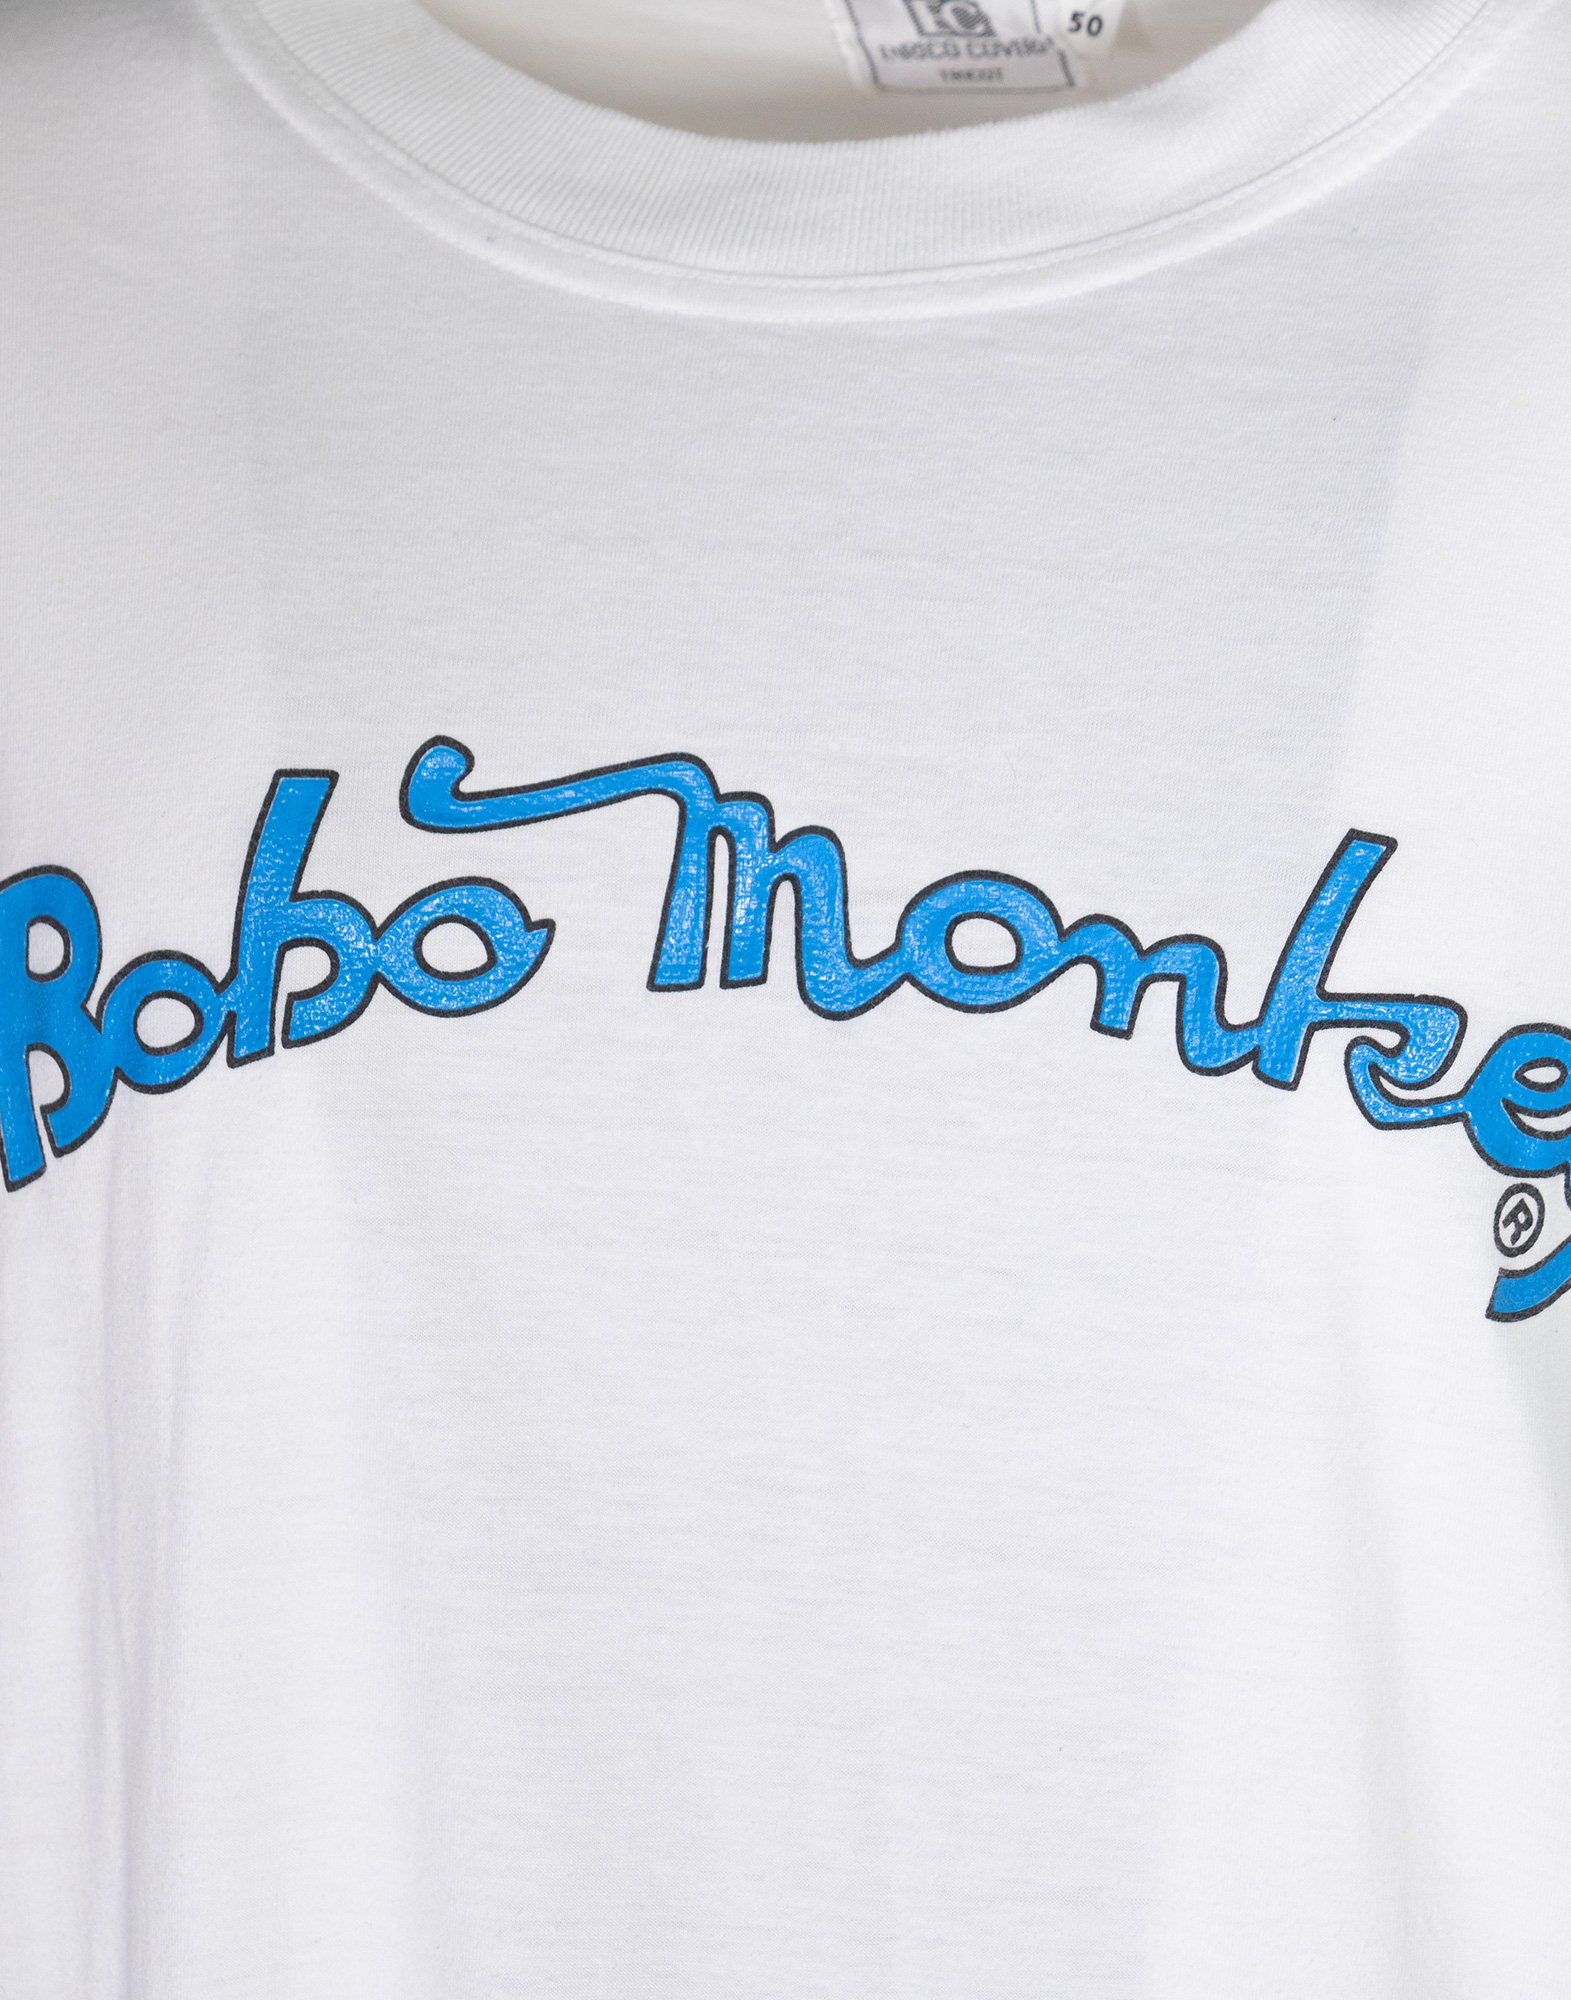 Enrico Coveri - T-shirt vintage Bobo Monkey